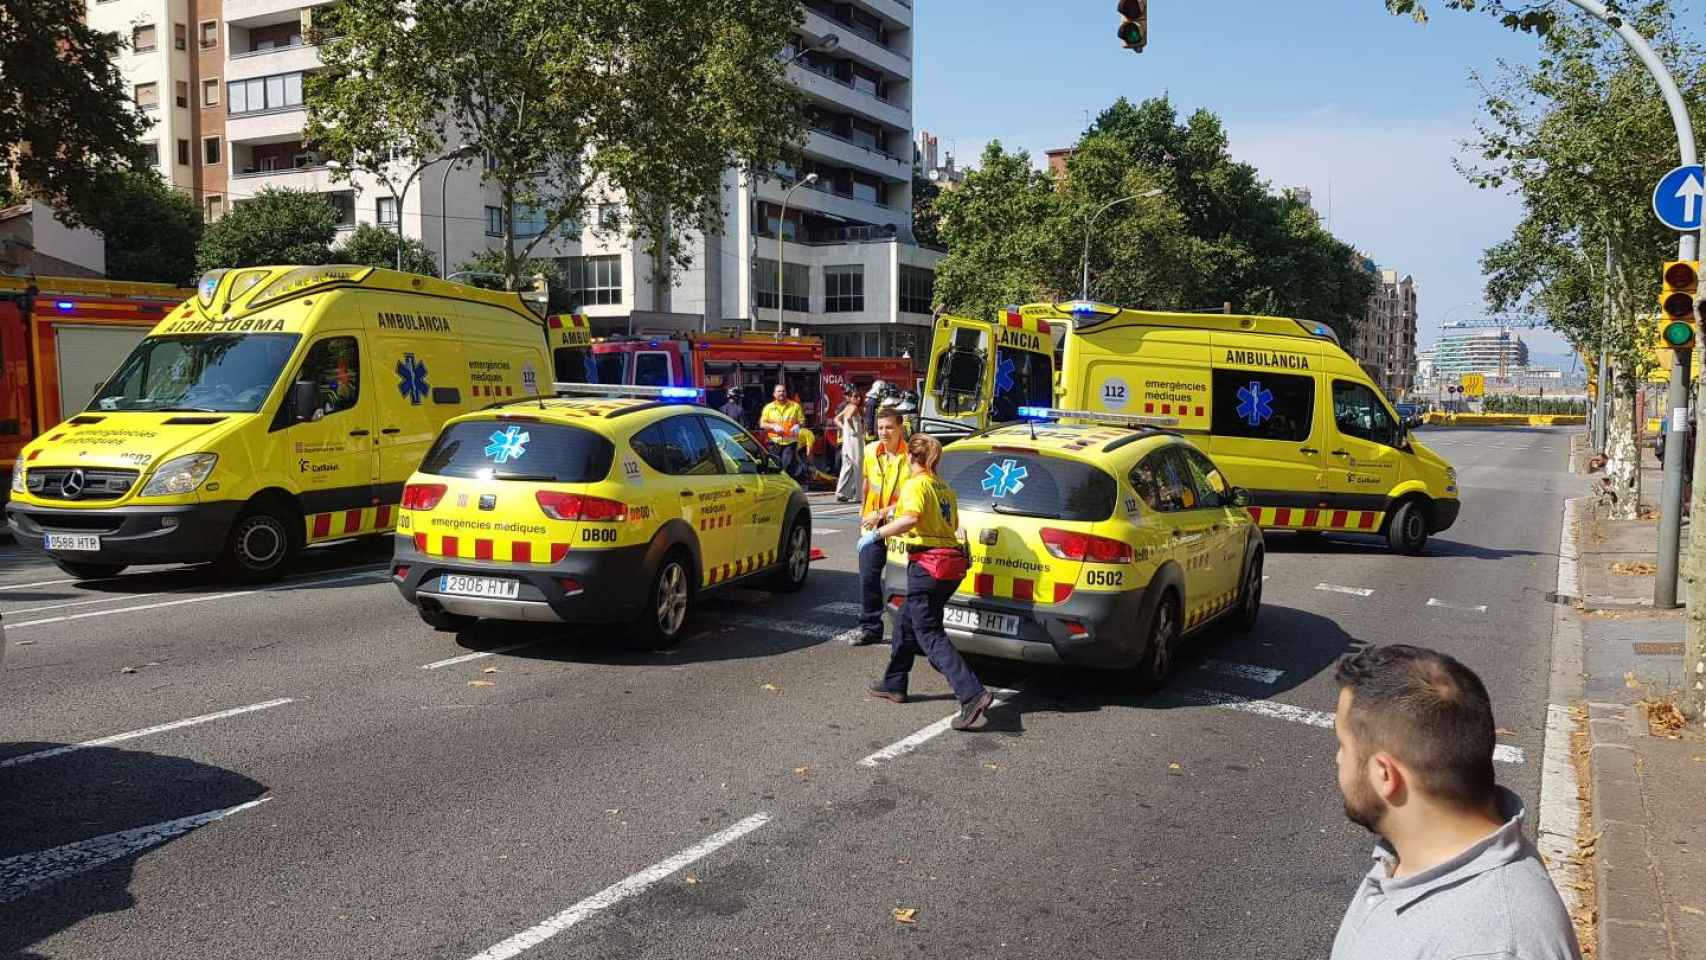 Varias ambulancias y bomberos atienden el hombre arrollado por un camión en la Gran Via de Barcelona / CG